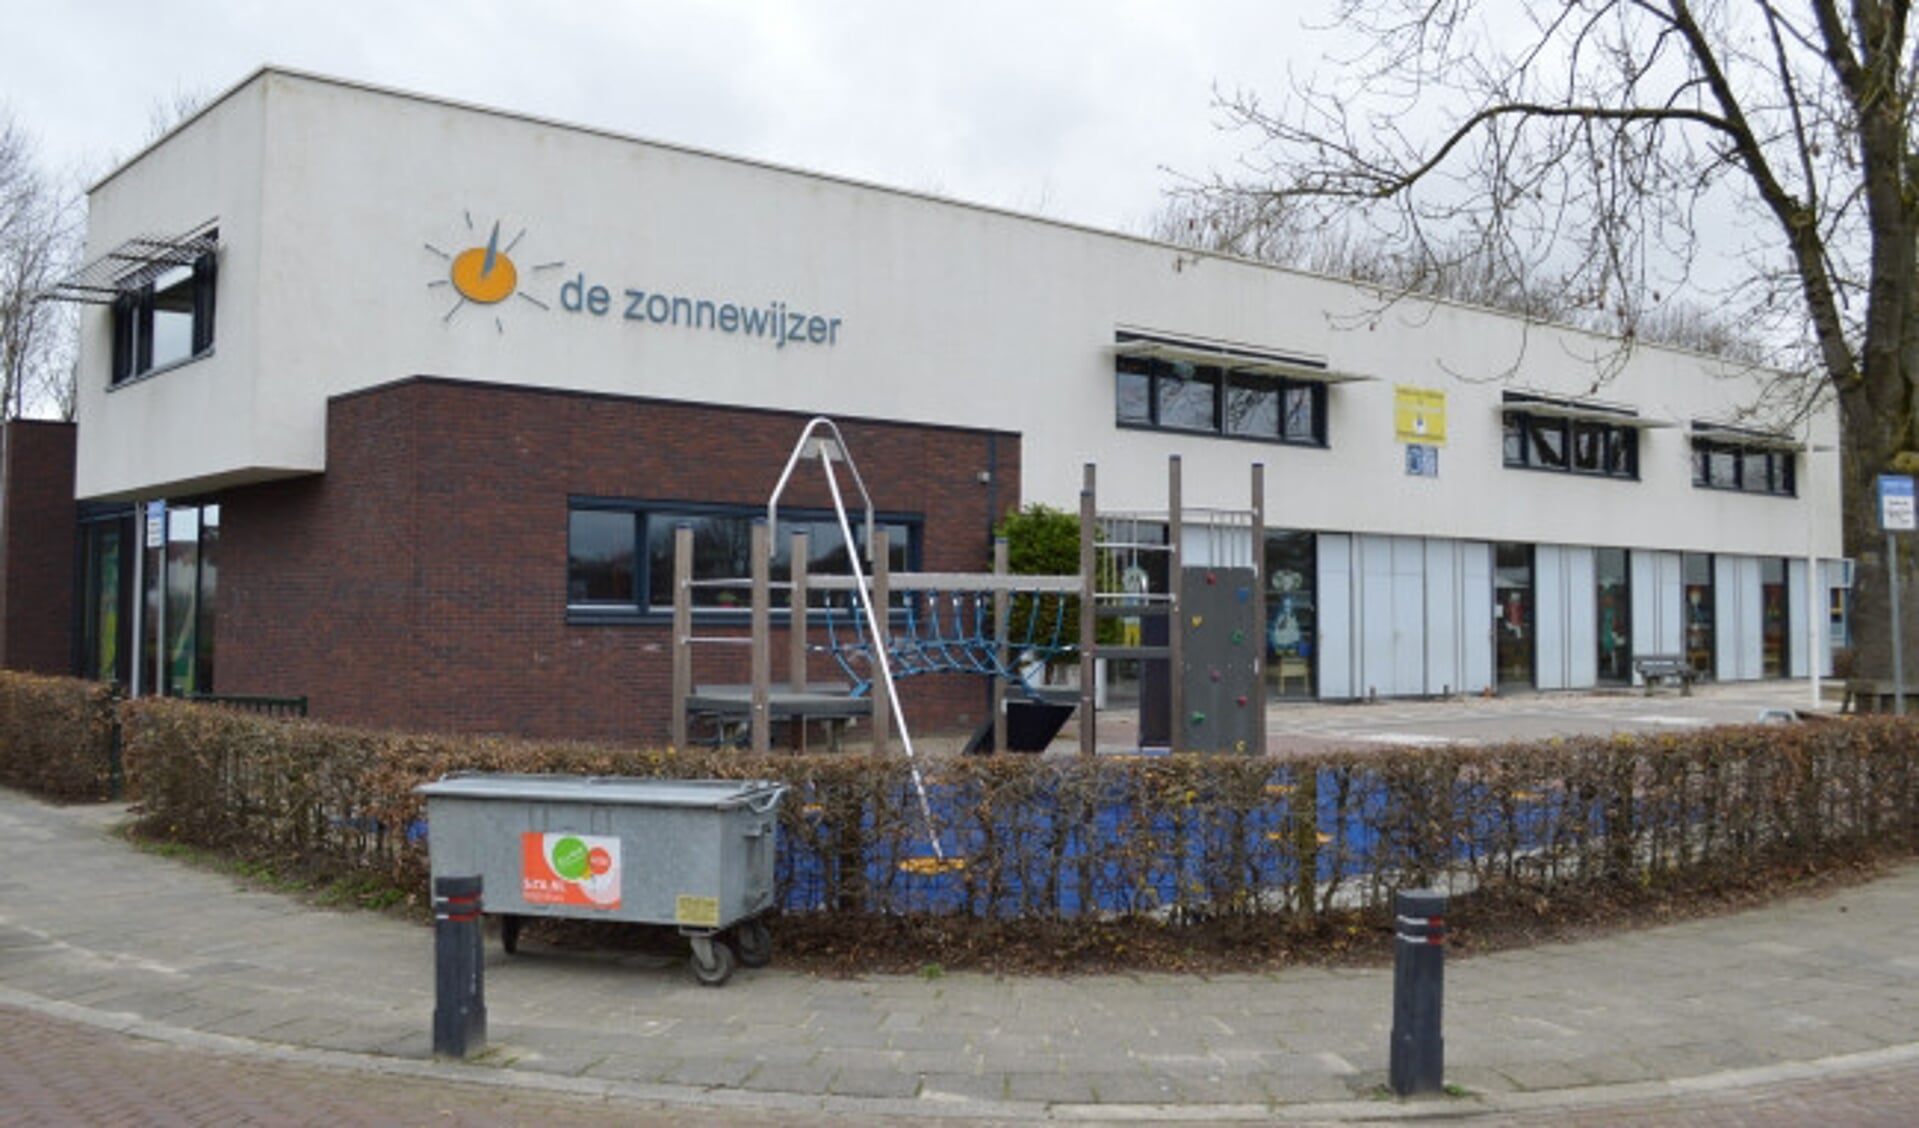  Katholieke basisschool De Zonnewijzer.